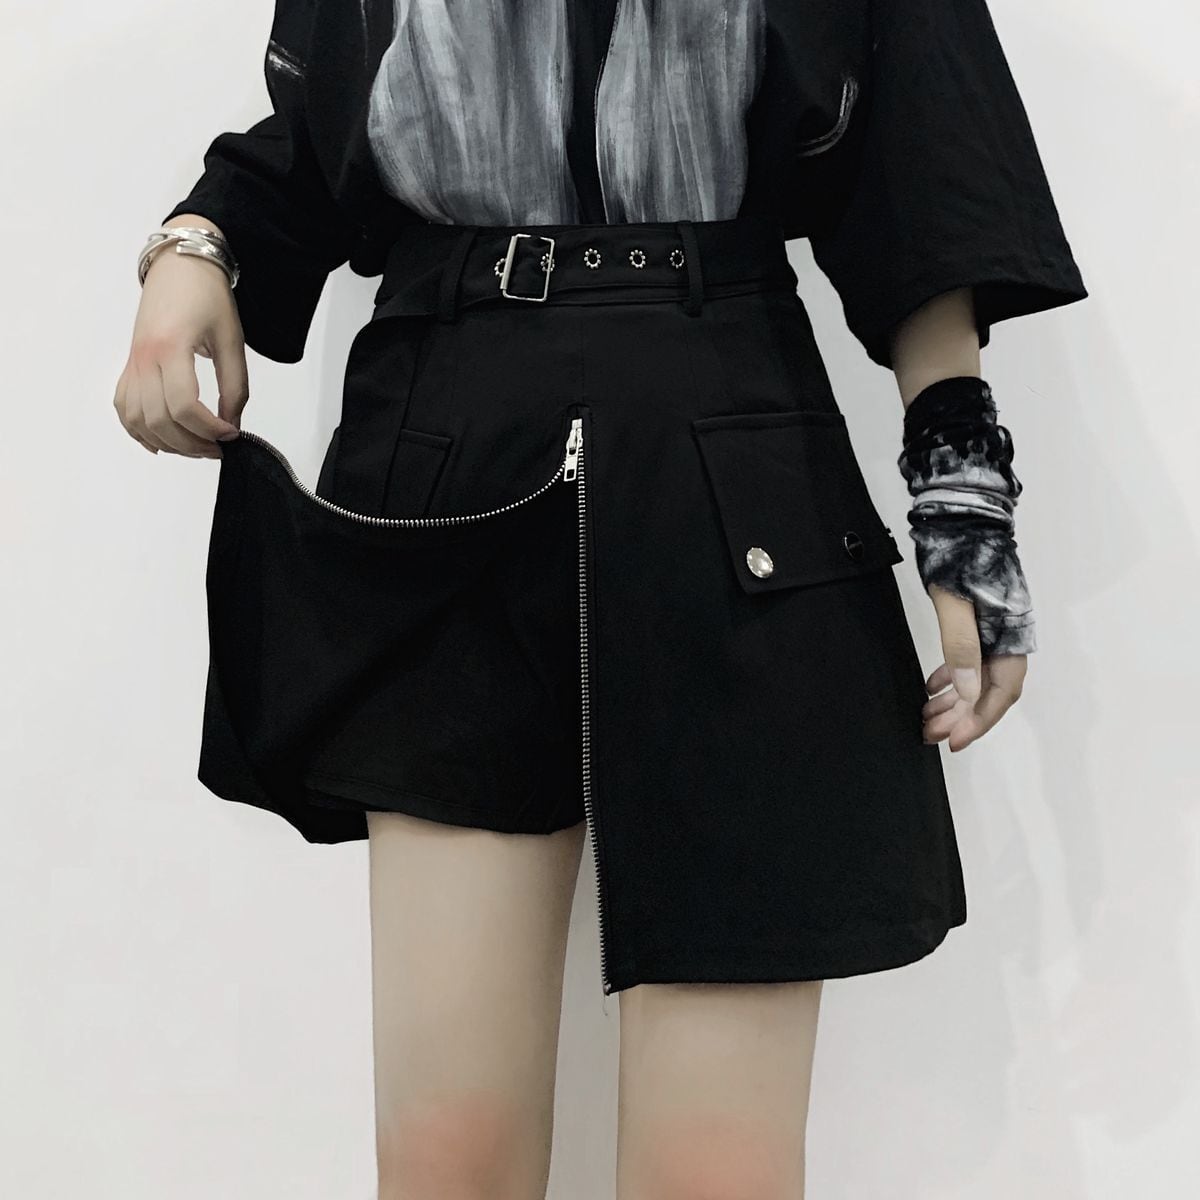 スカート風 ショートパンツ フロントジップ Aライン ハイウエスト 韓国ファッション レディース ショーパン ジップアップ ガーリー 暗黒系 /  Black skirt high waist overall skirt (DTC-620051473564) | Value Rave 